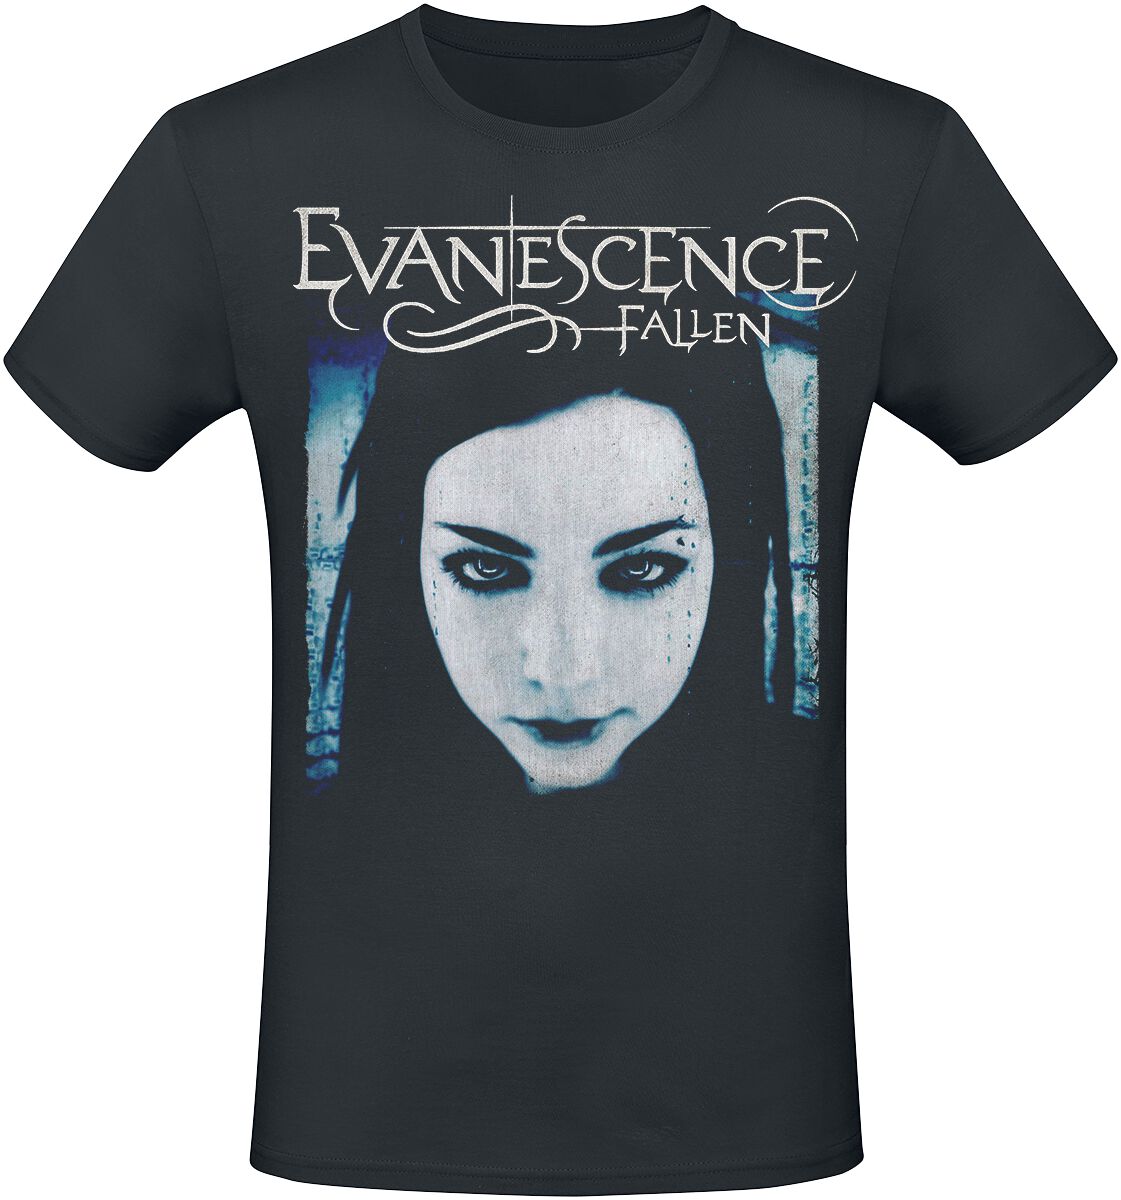 Evanescence T-Shirt - Fallen - S bis XXL - für Männer - Größe L - schwarz  - Lizenziertes Merchandise!